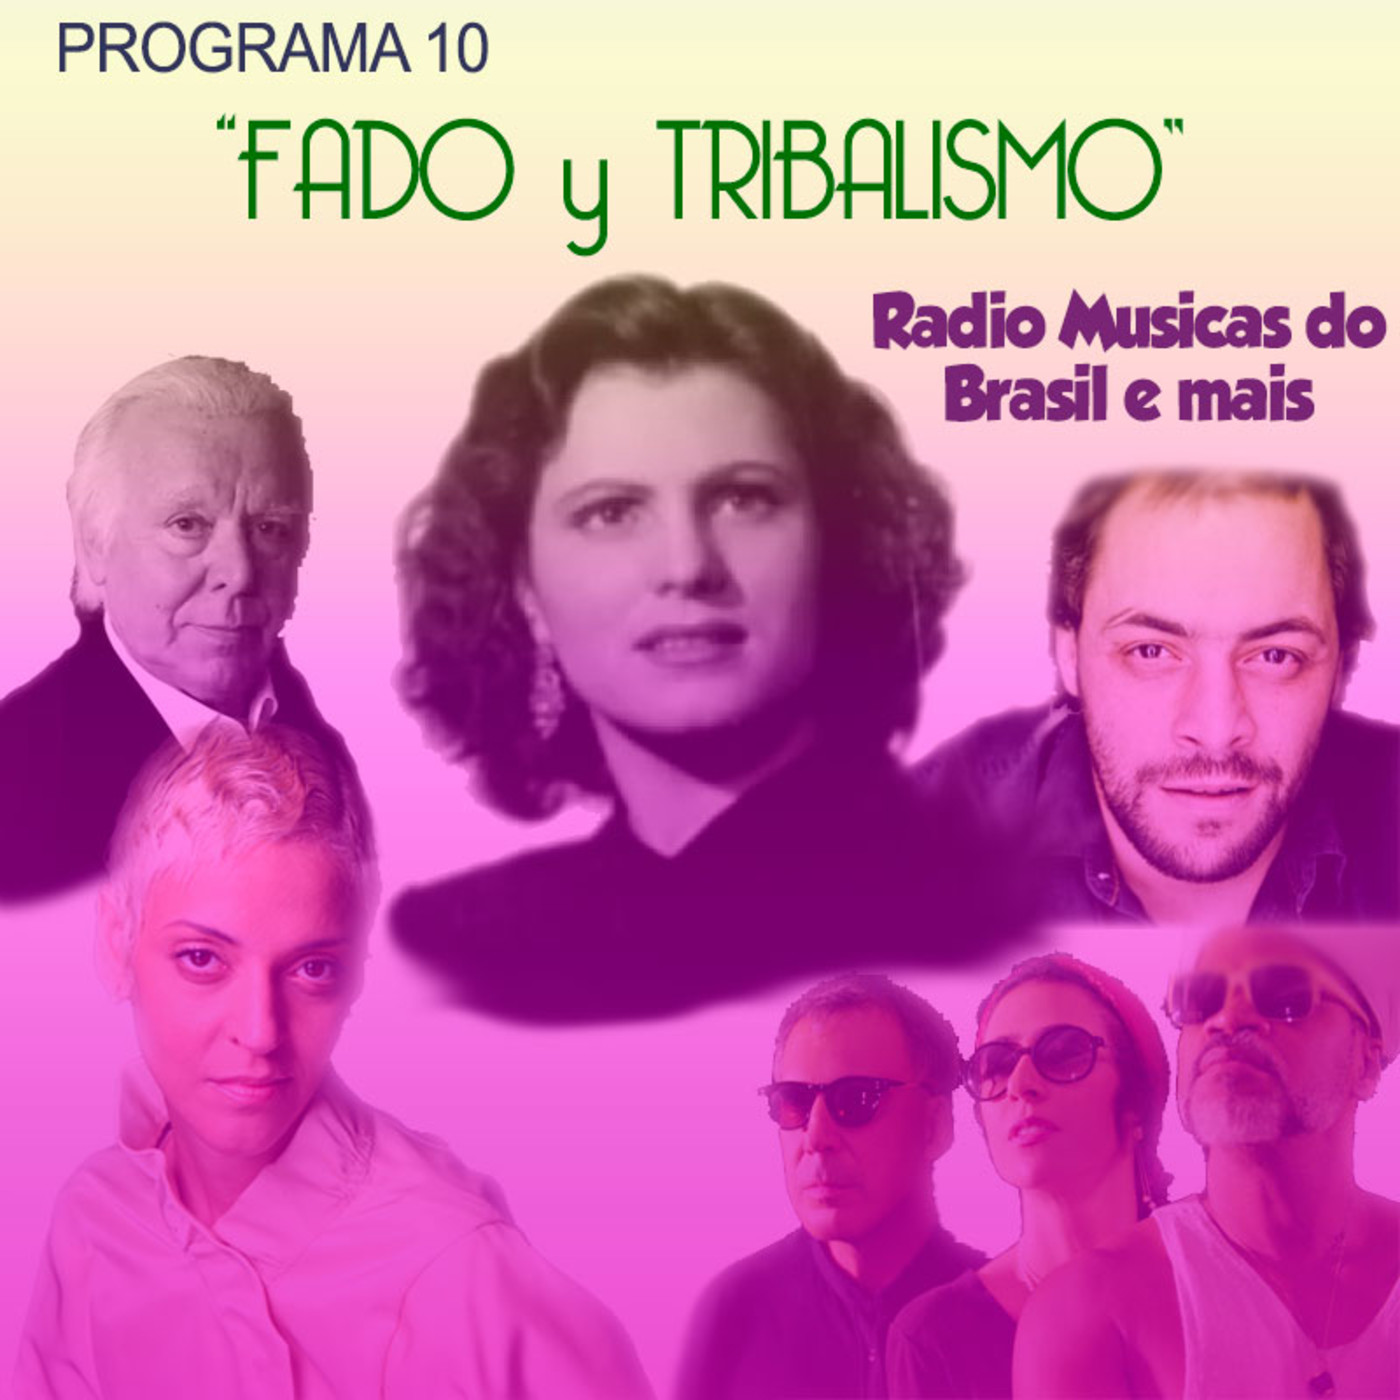 Programa 10. "Fado y Tribalismo" (Radio Musicas do Brasil e mais)